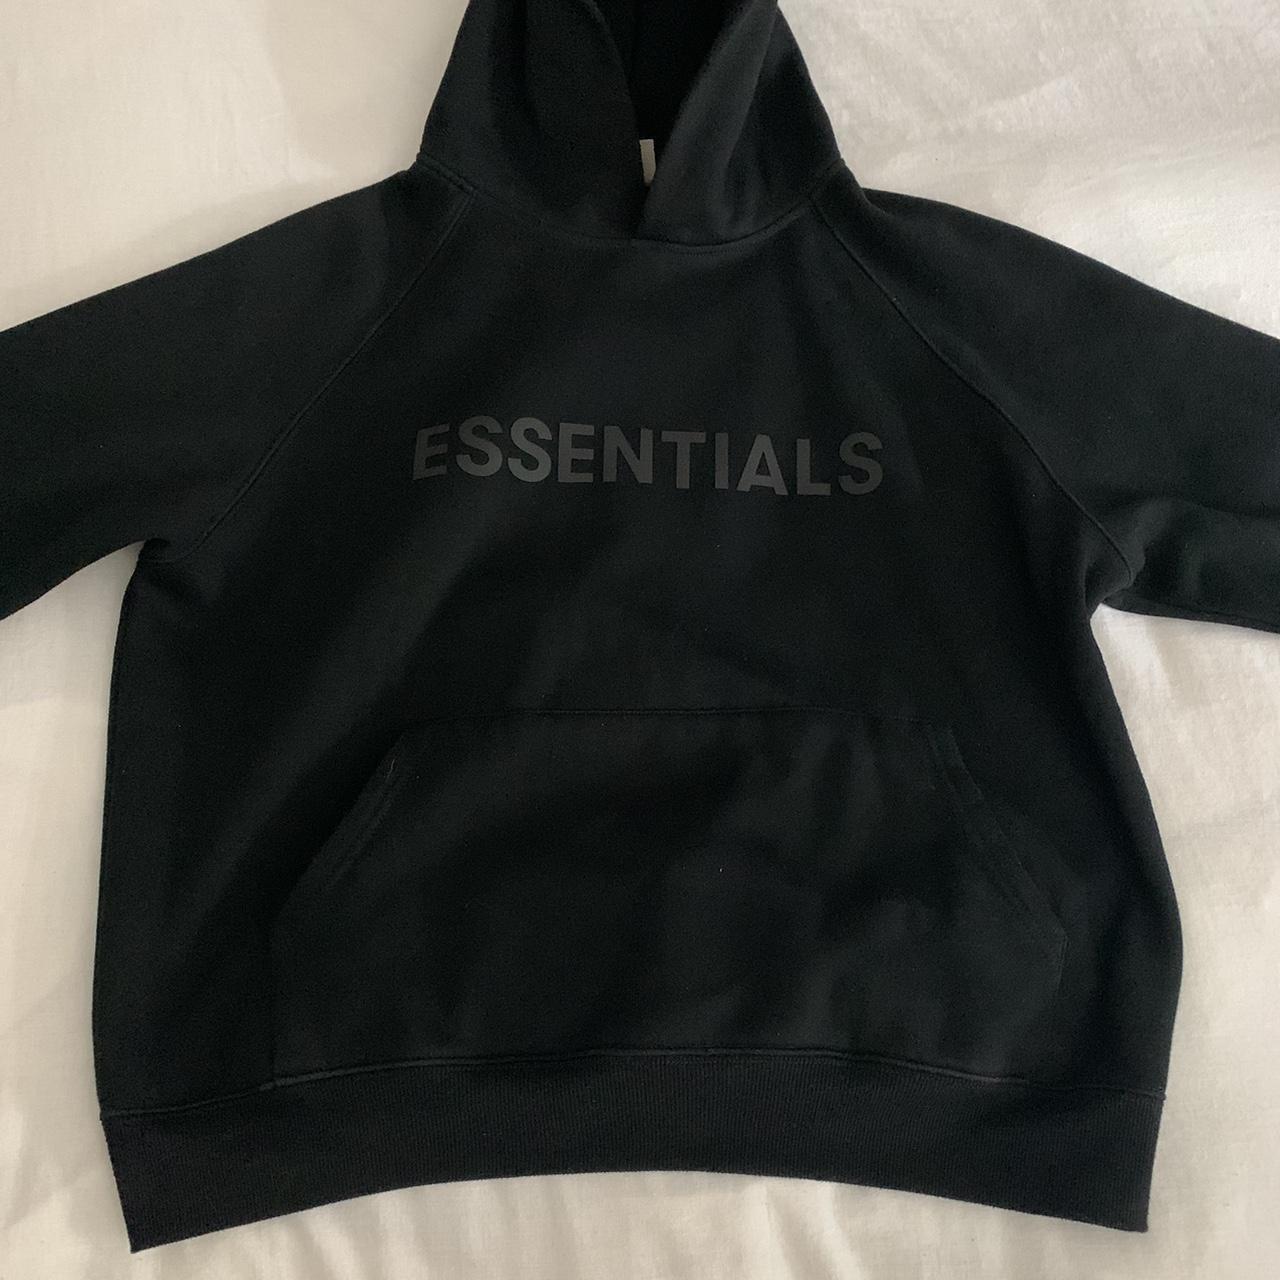 Black essentials fear of god hoodie 🖤 Worn once... - Depop